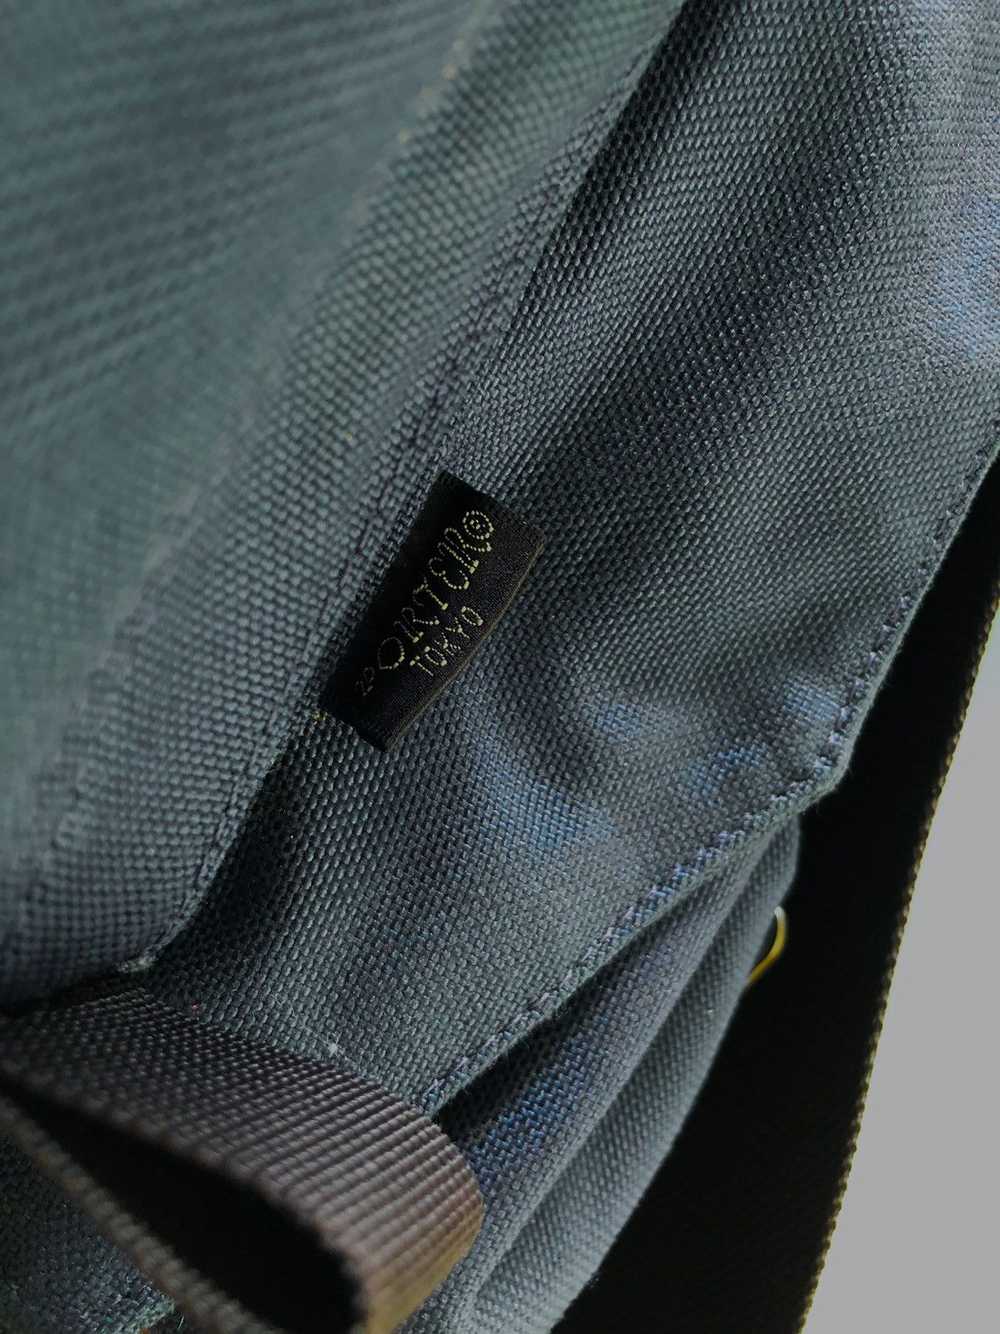 Japanese Brand × Porter porter slingbag - image 3